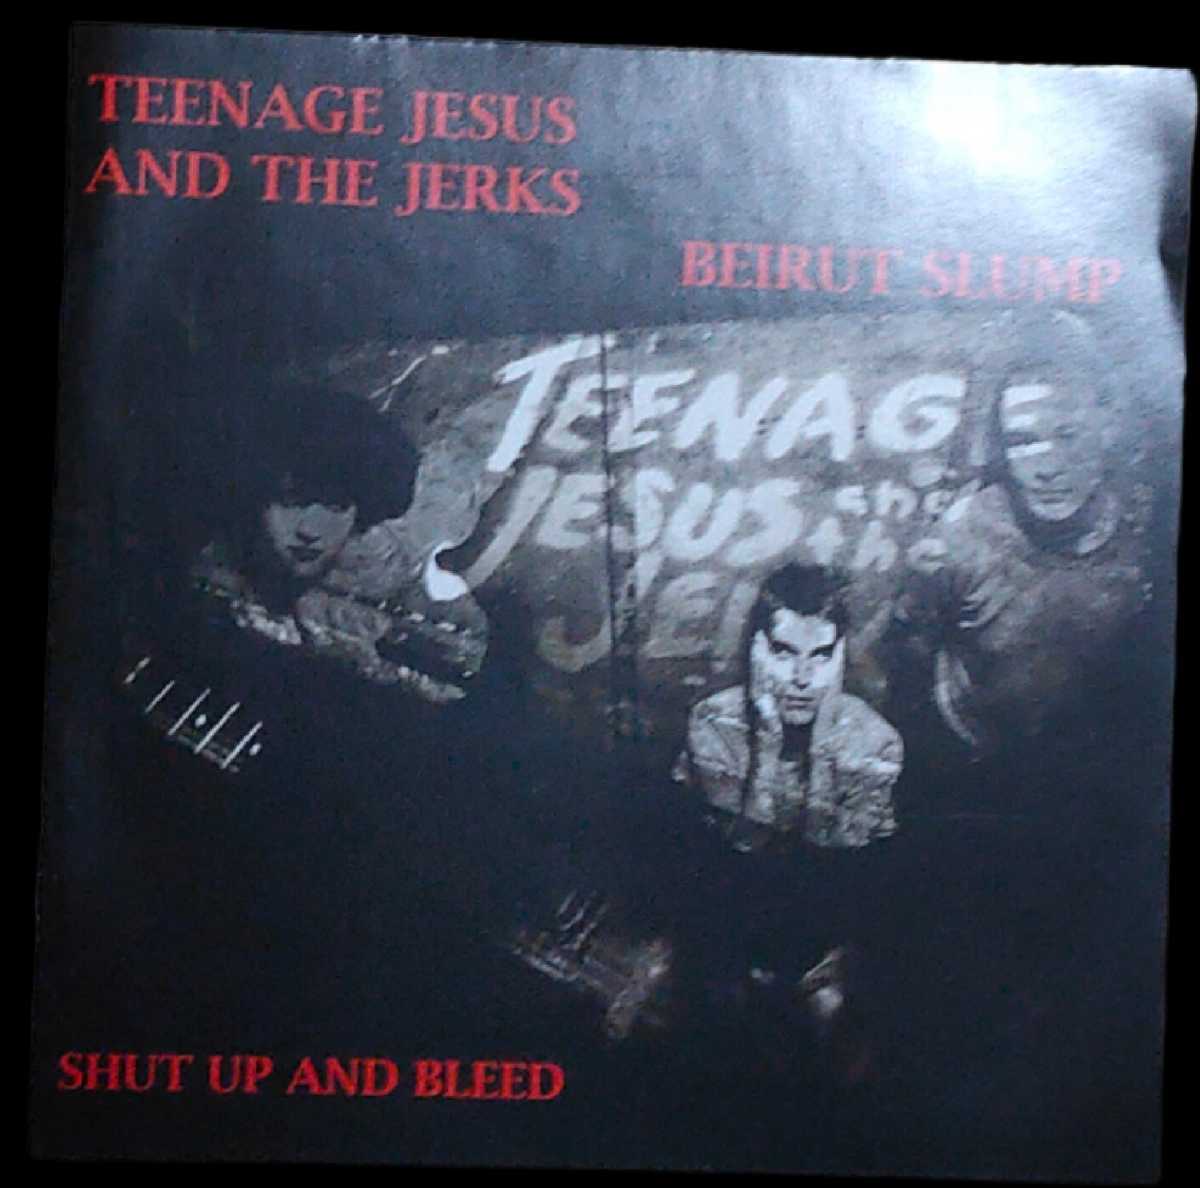 廃盤 即決 Teenager Jesus And The Jerks Beirut Slump Shut Up And Bleed CD_画像1